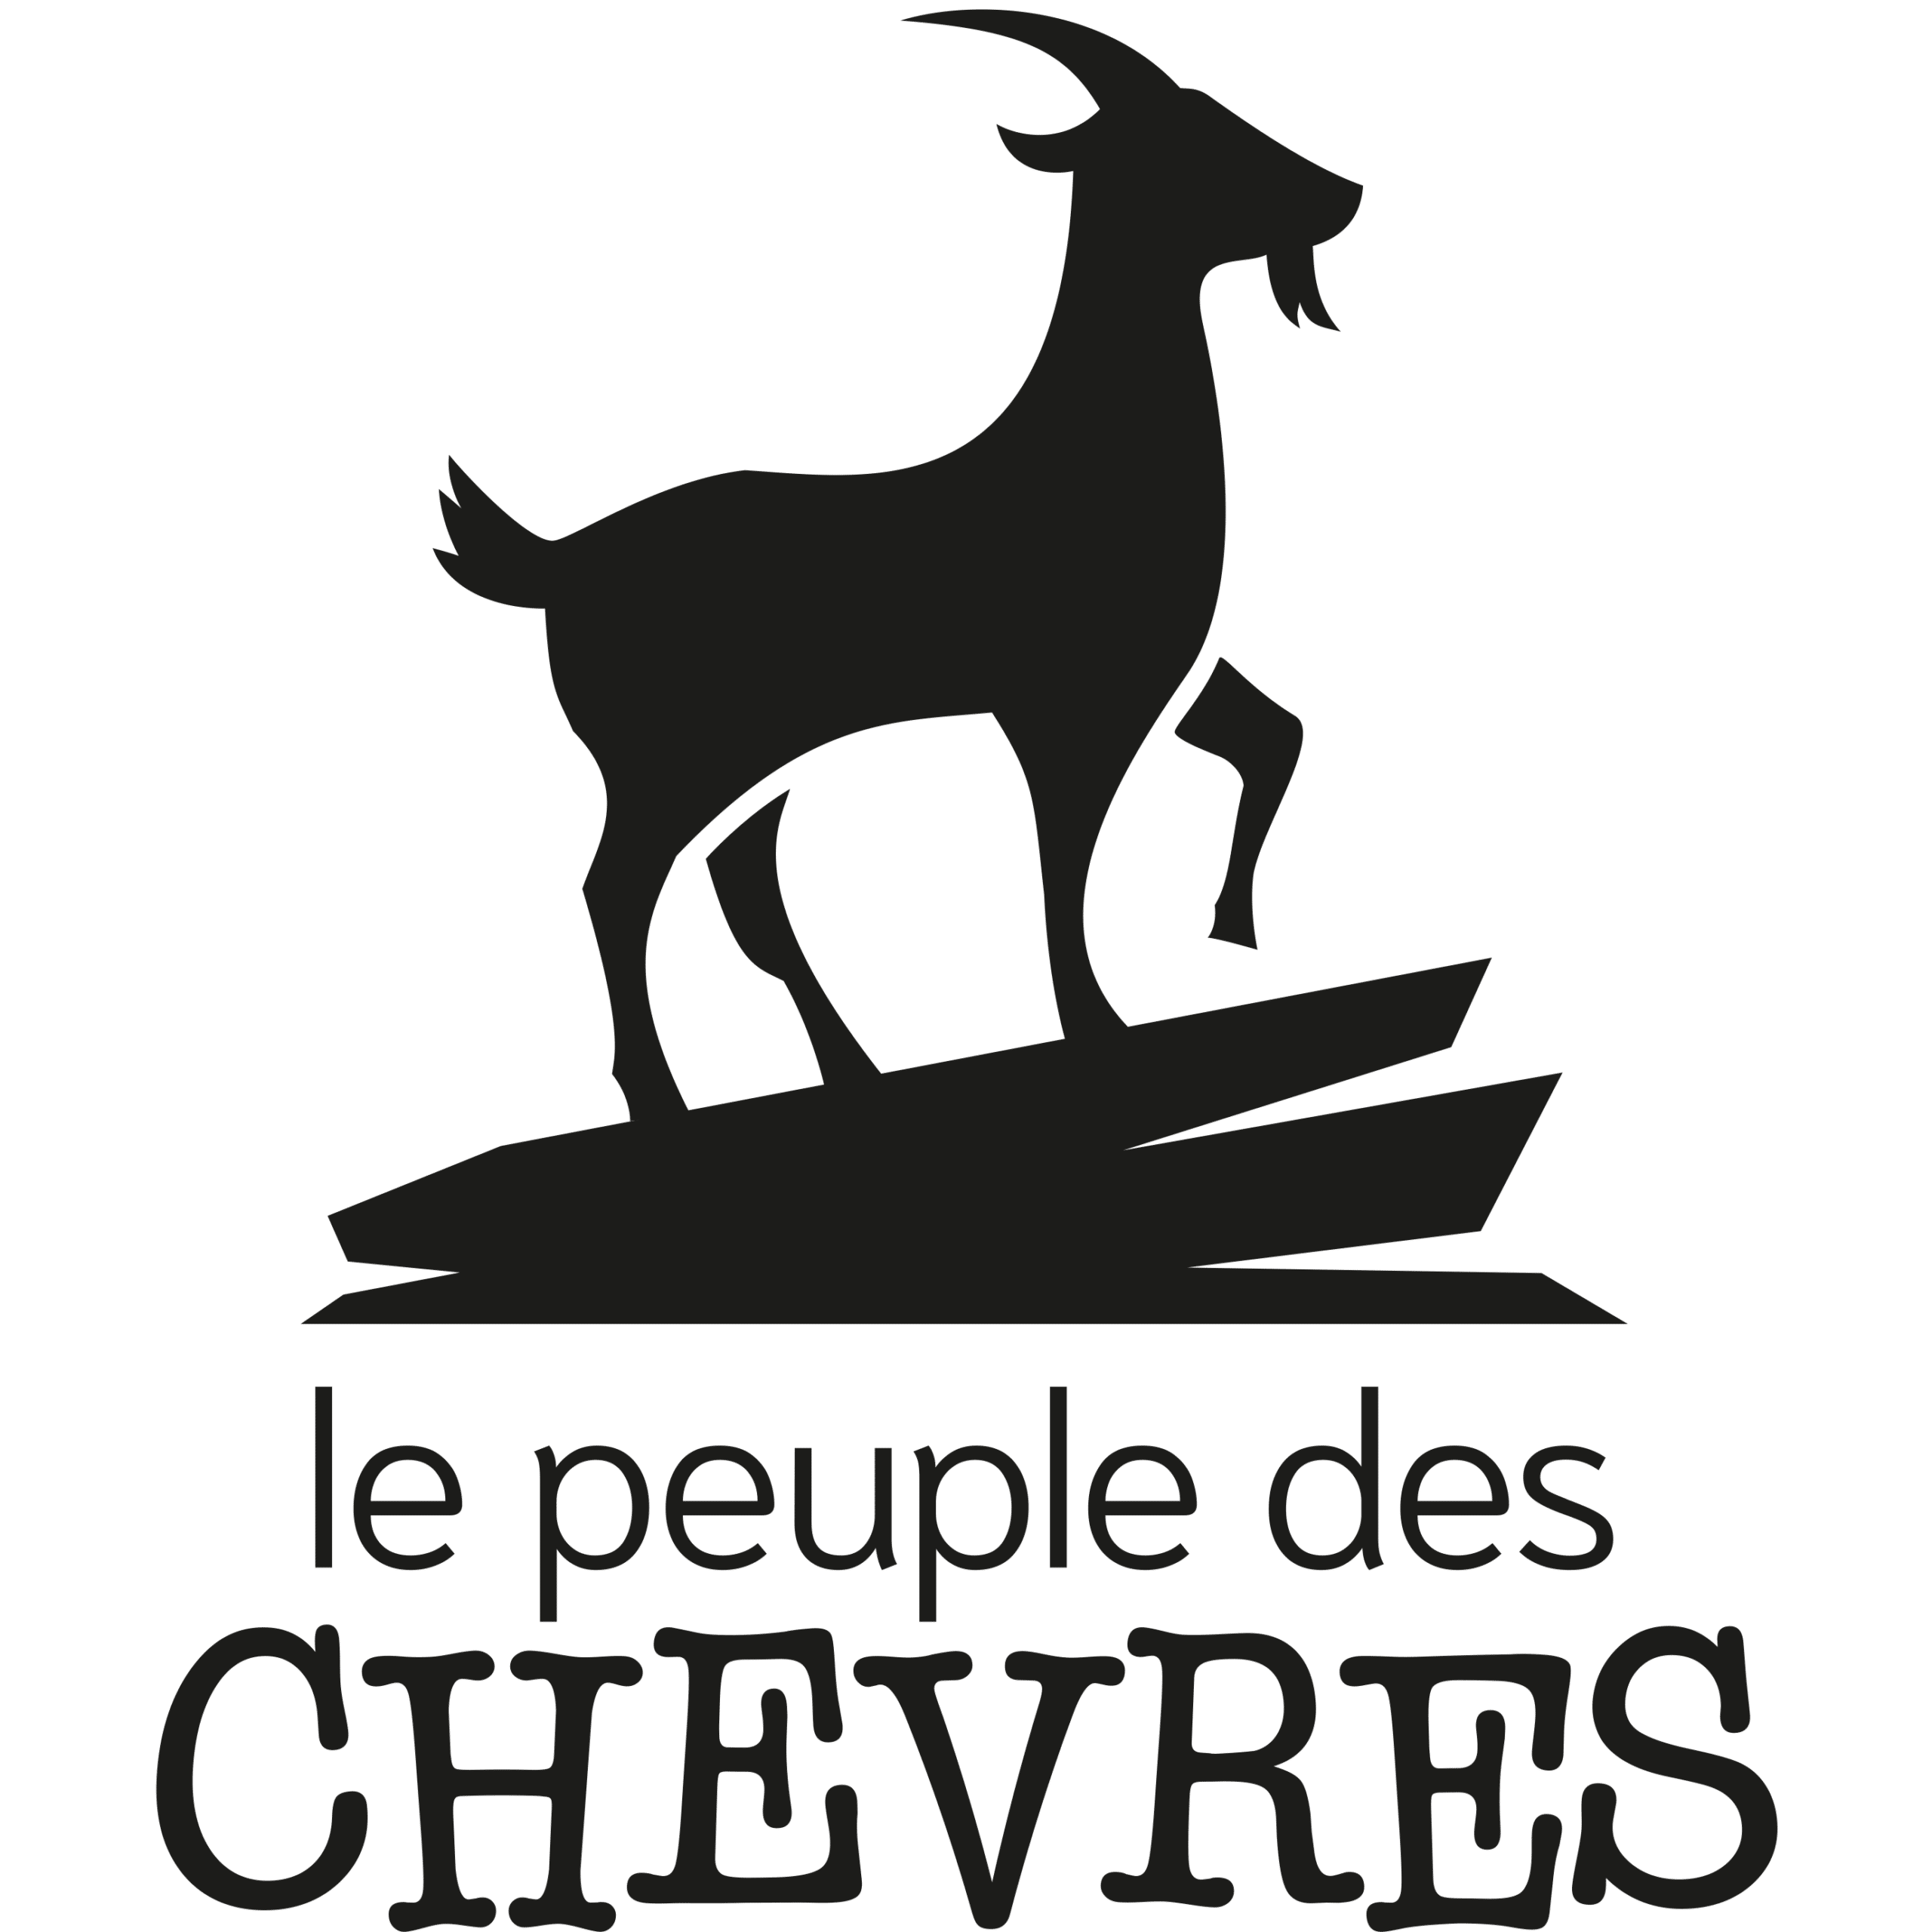 <a href="http://lepeupledeschevres.fr/accueil/" target="_blank">Le Peuple des chèvres</a>